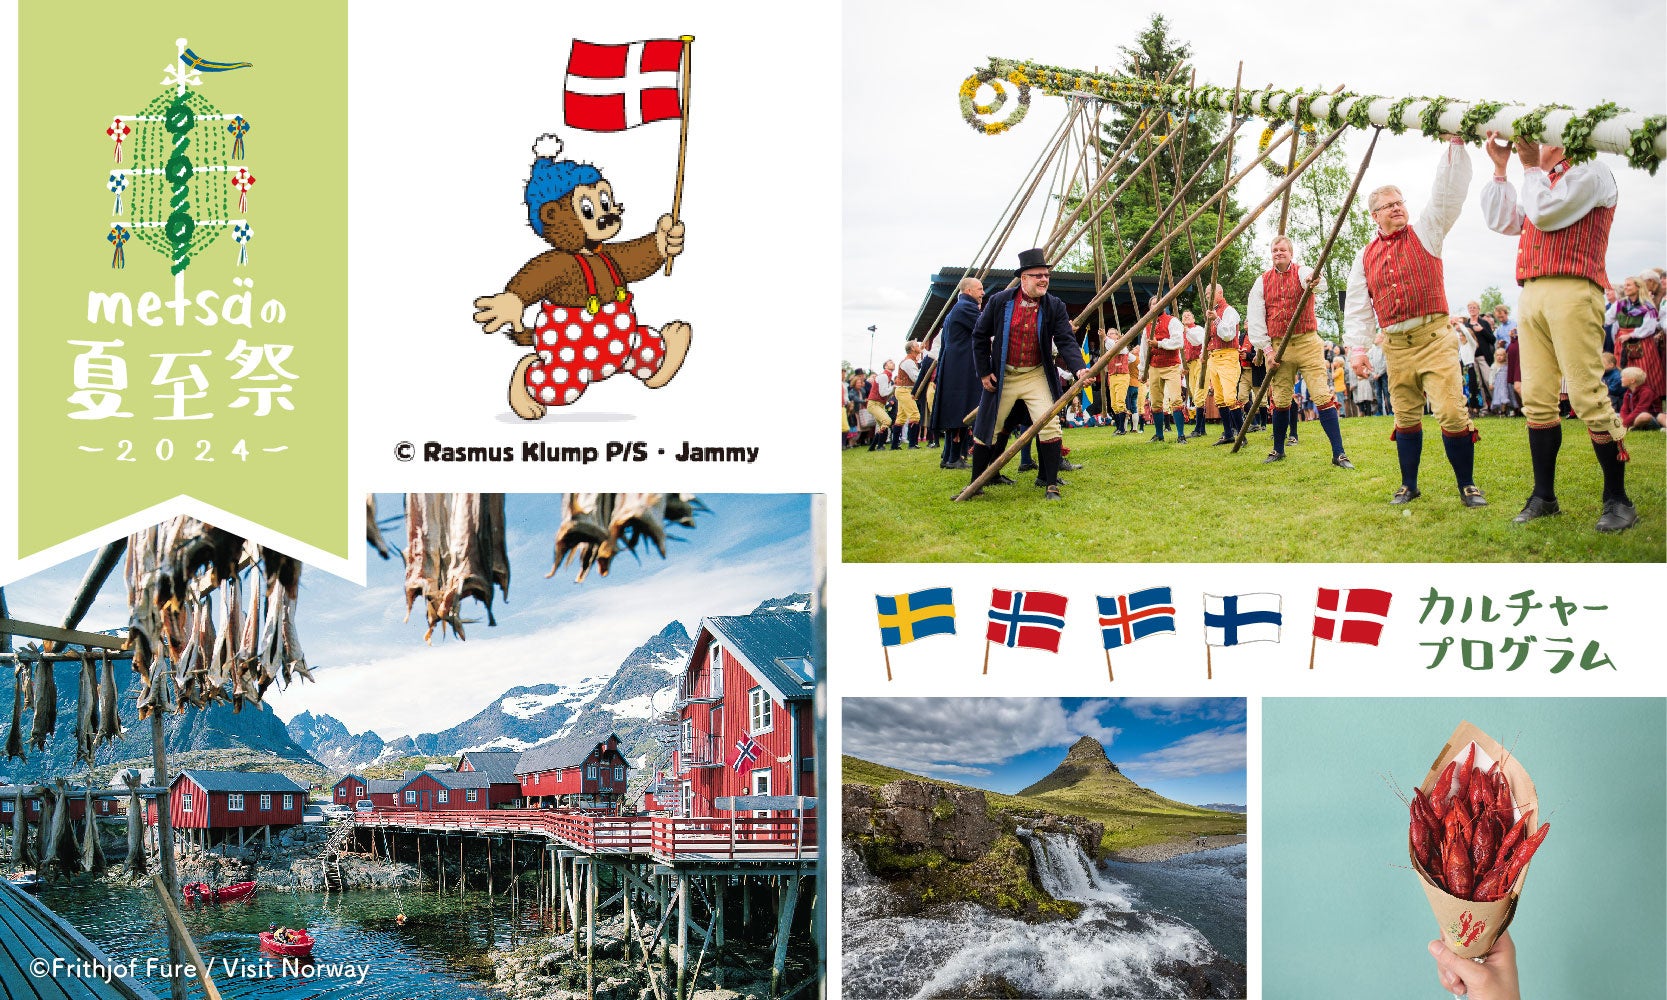 デンマークの人気キャラクターが夏至のかがり火の点火ゲストで登場！大使館職員によるスペシャルトークイベントで楽しく北欧文化を学べる特別な夏至祭